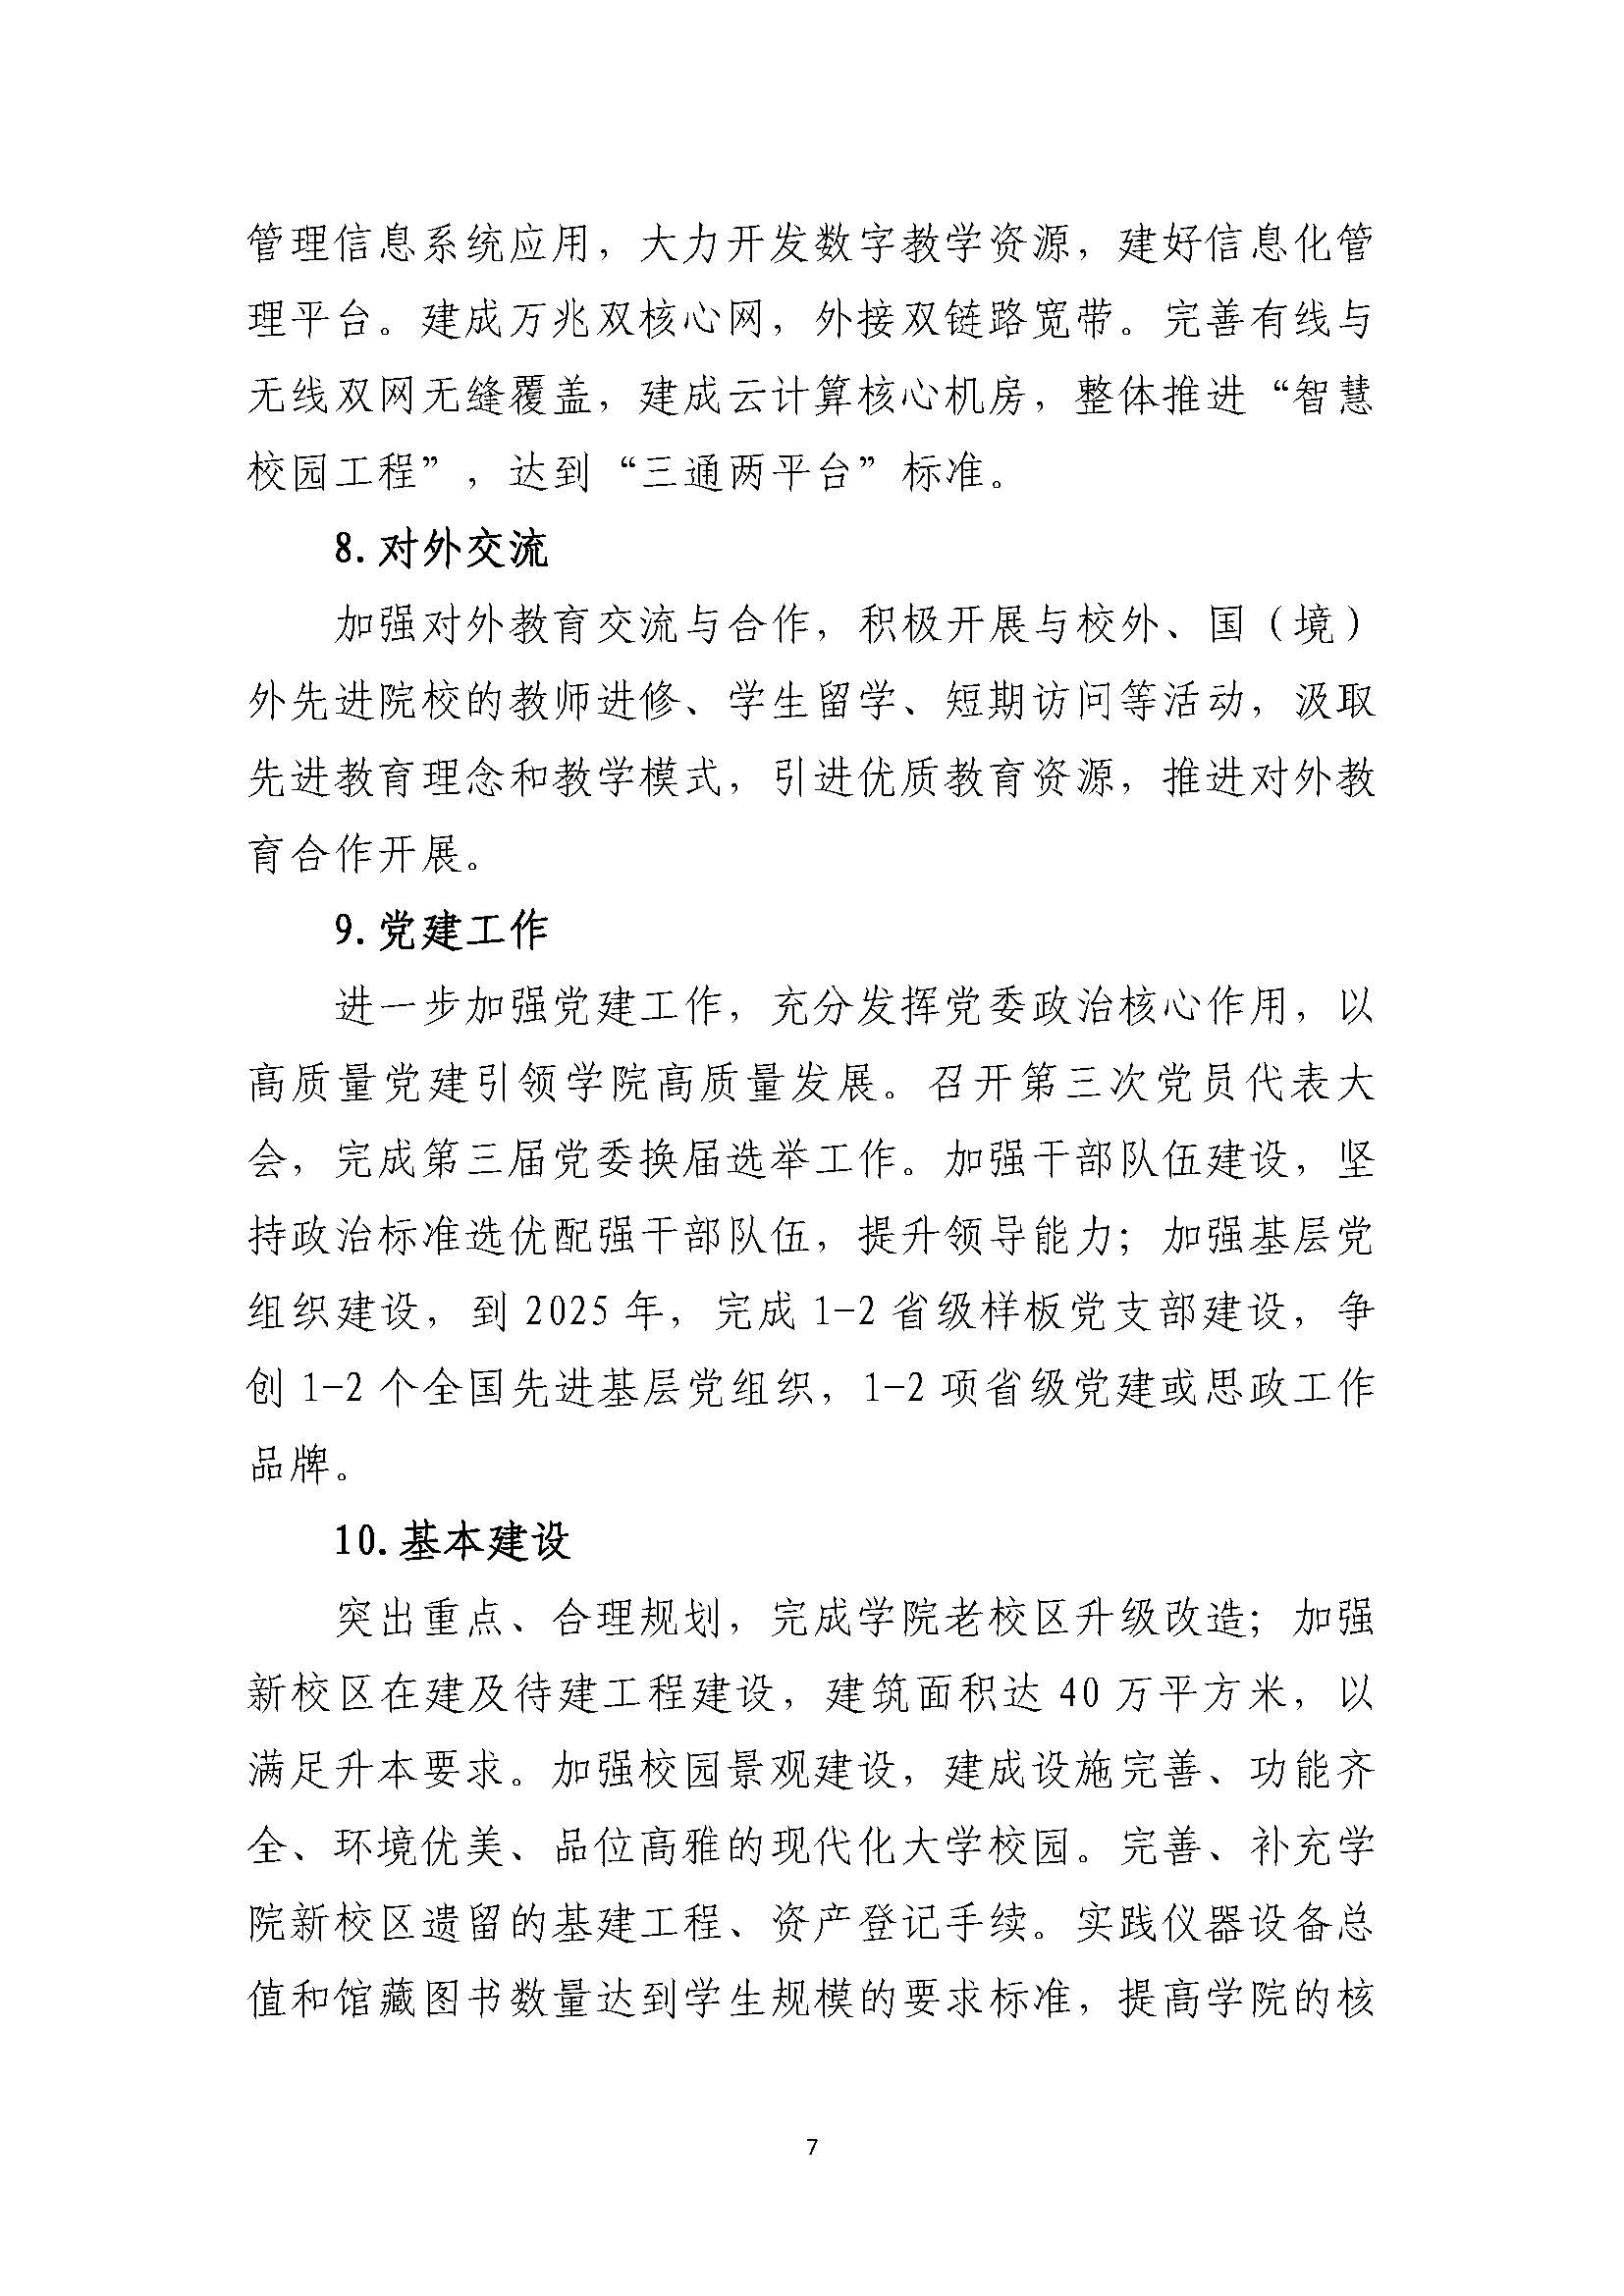 郑州黄河护理职业学院2021-2025年发展规划_页面_07.jpg